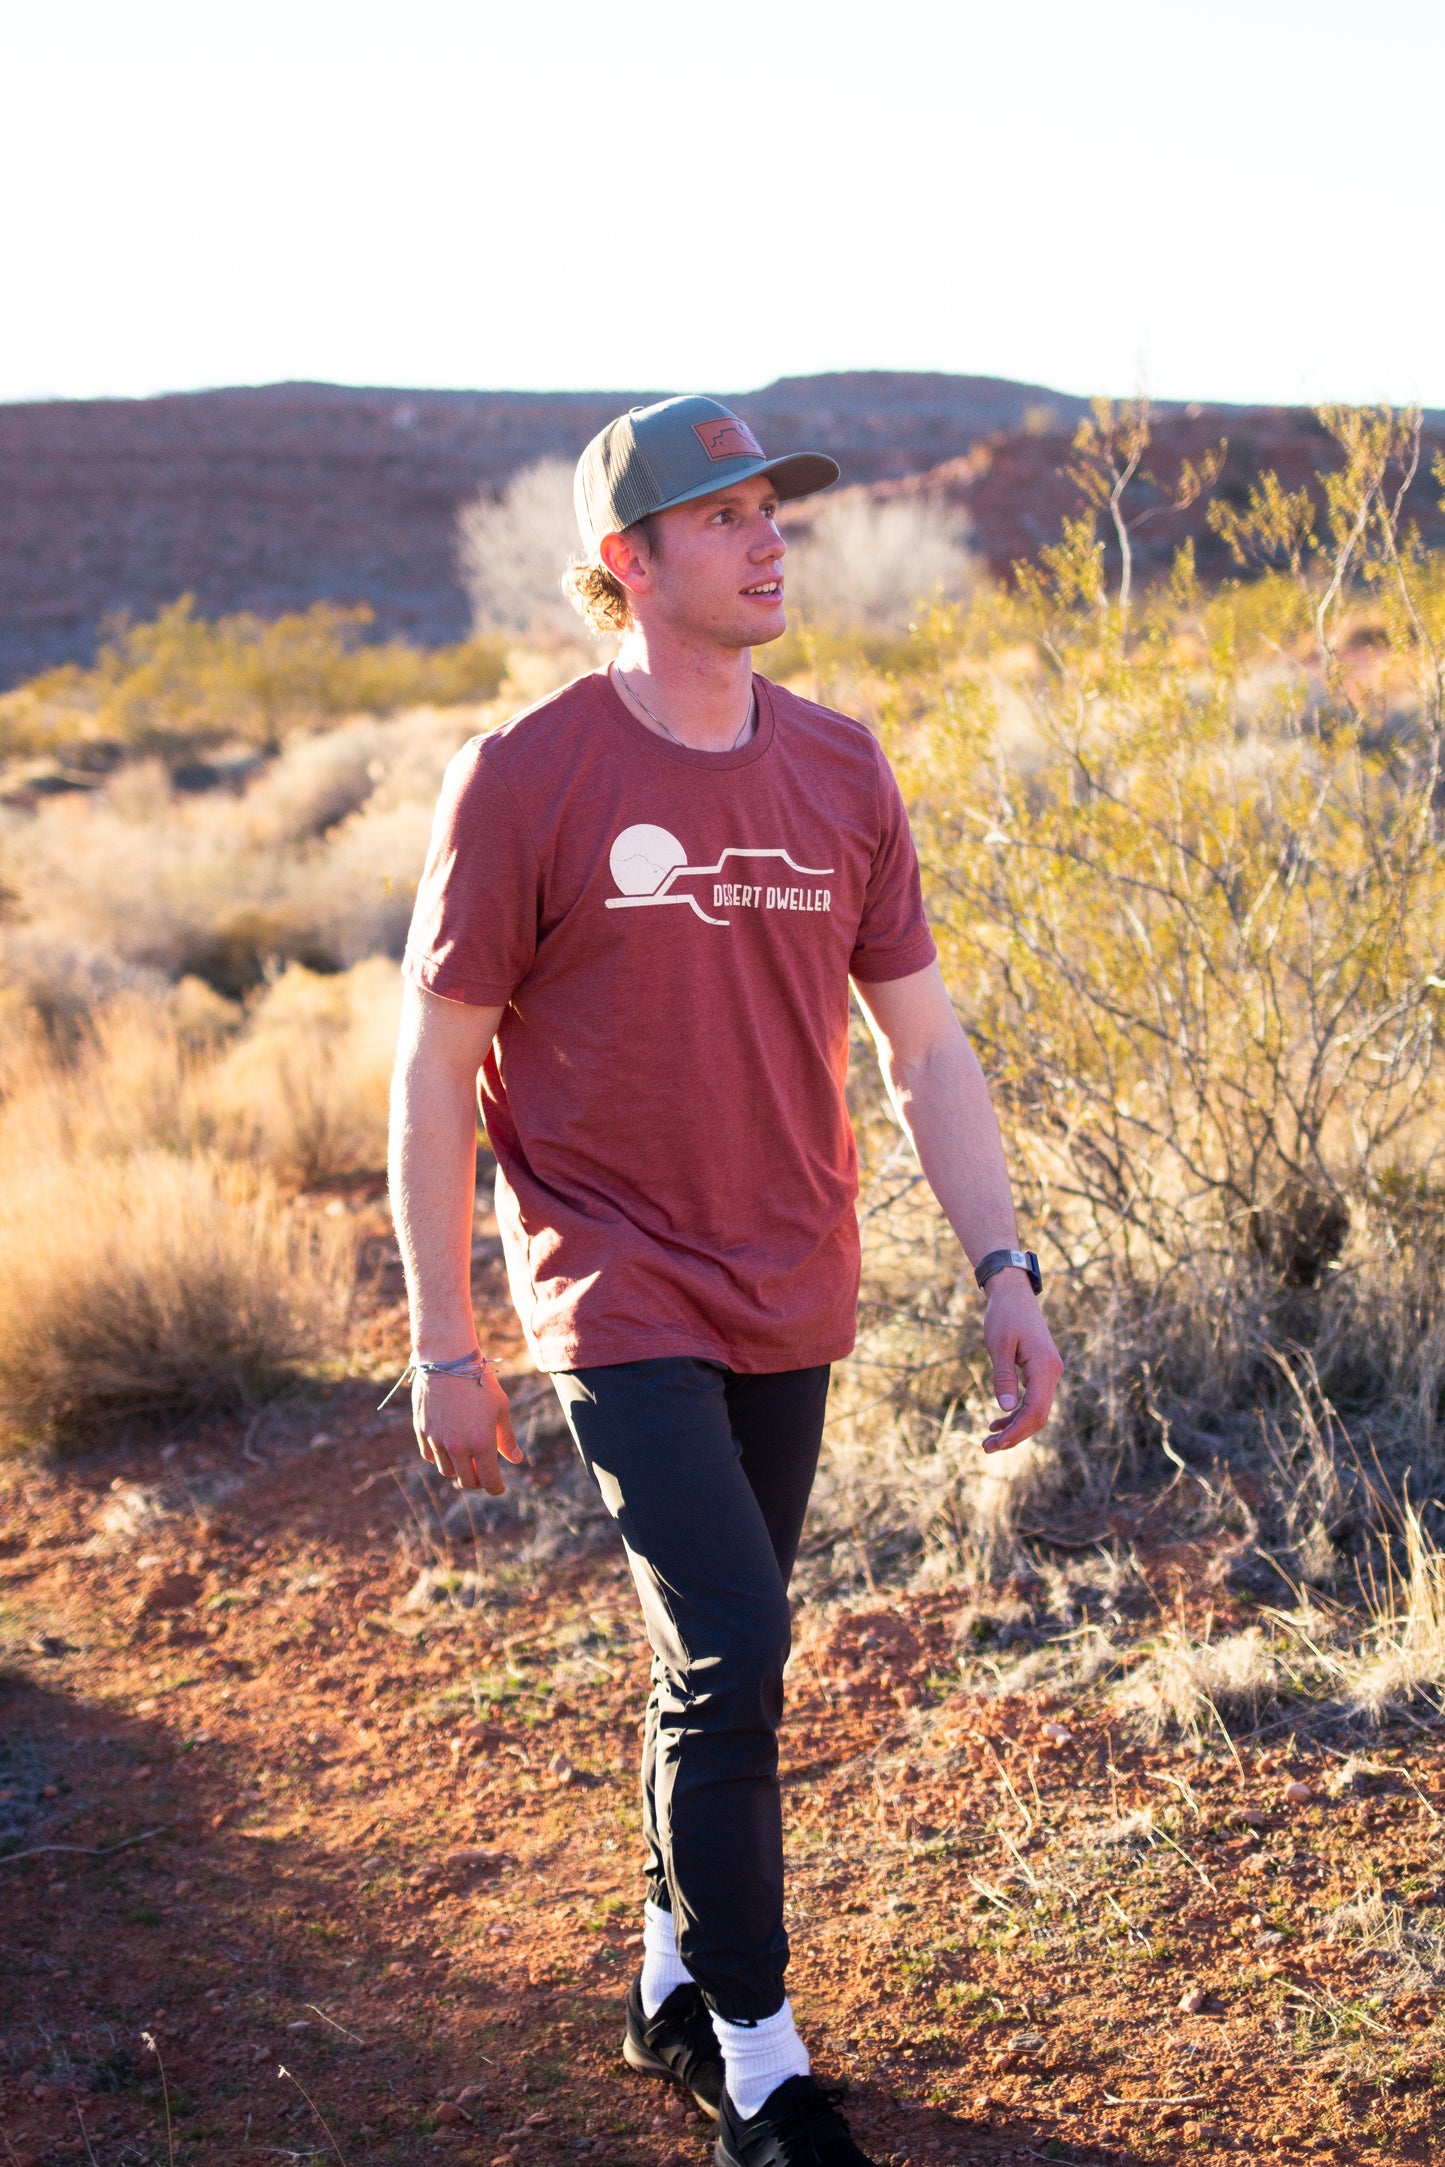 Desert Dweller T-Shirt